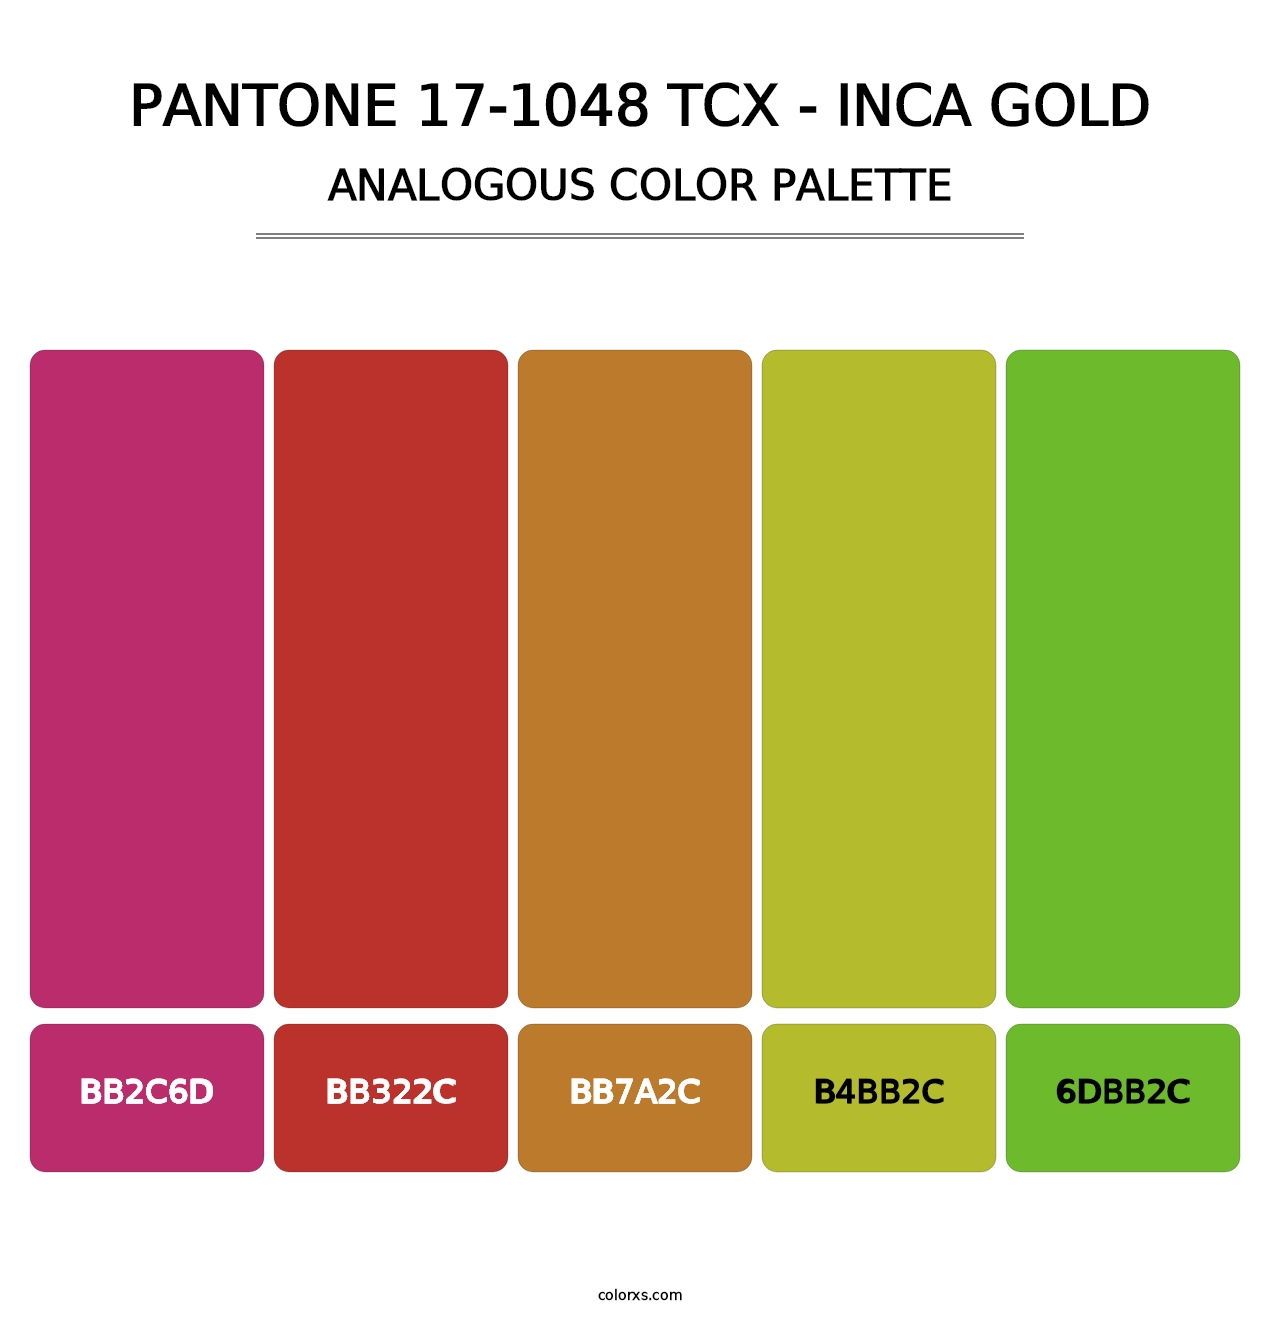 PANTONE 17-1048 TCX - Inca Gold - Analogous Color Palette